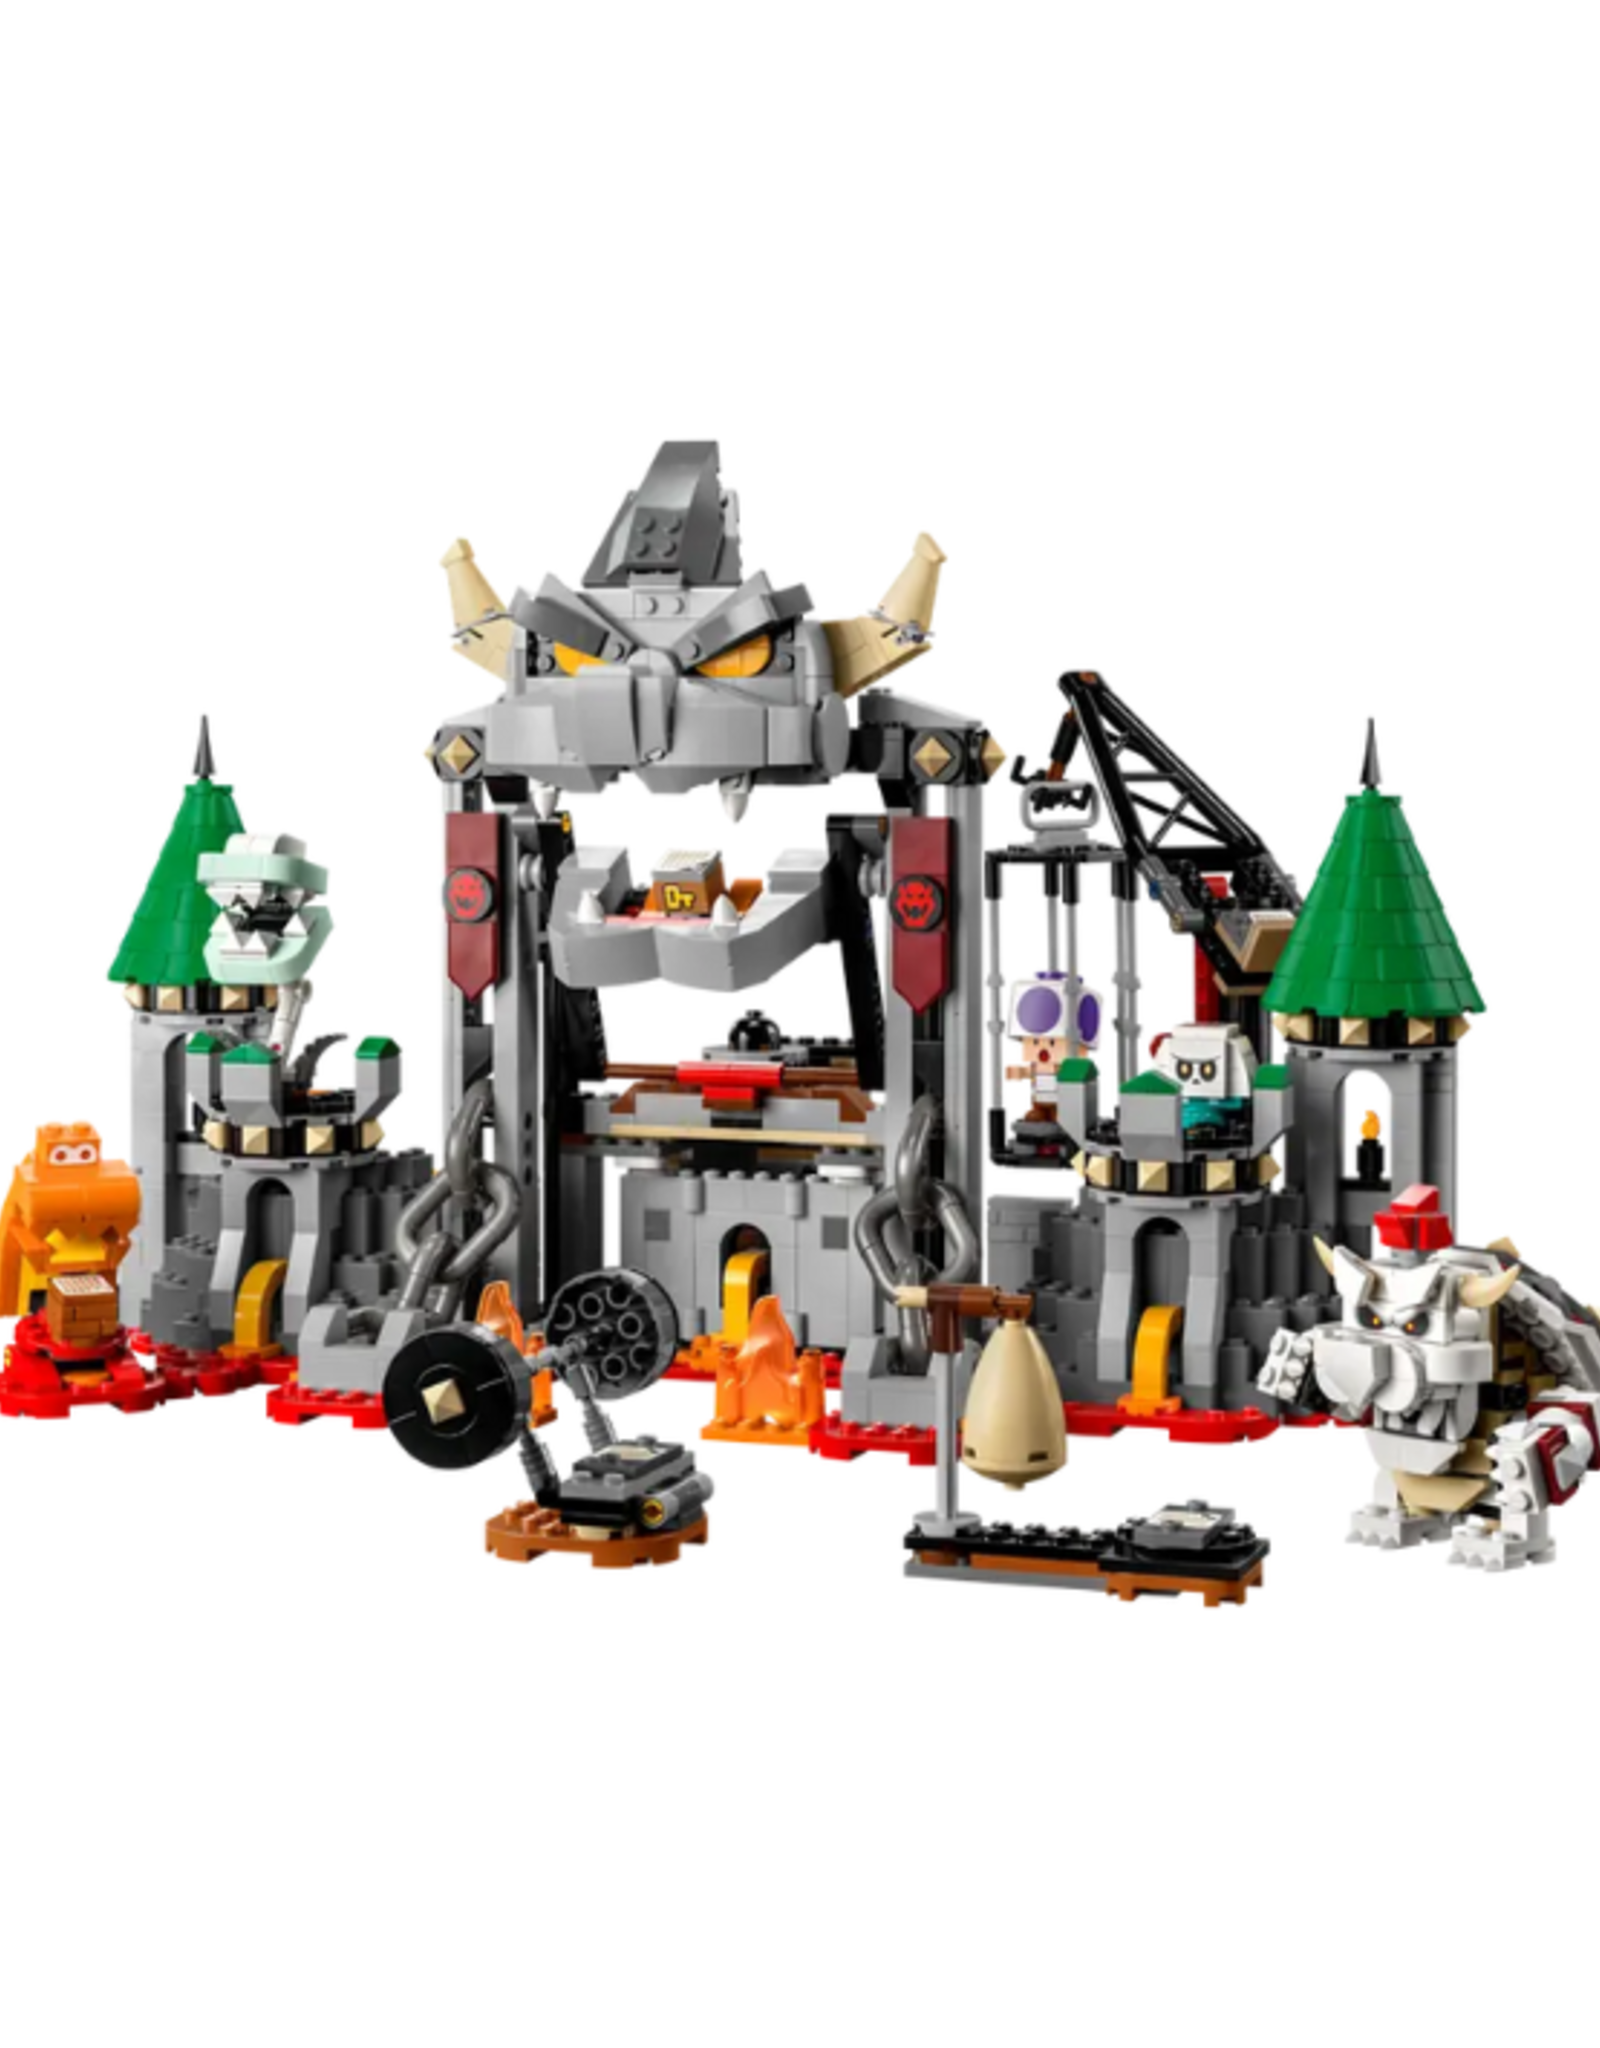 Lego Lego - Super Mario - 71423 - Dry Bowser Castle Battle Expansion Set